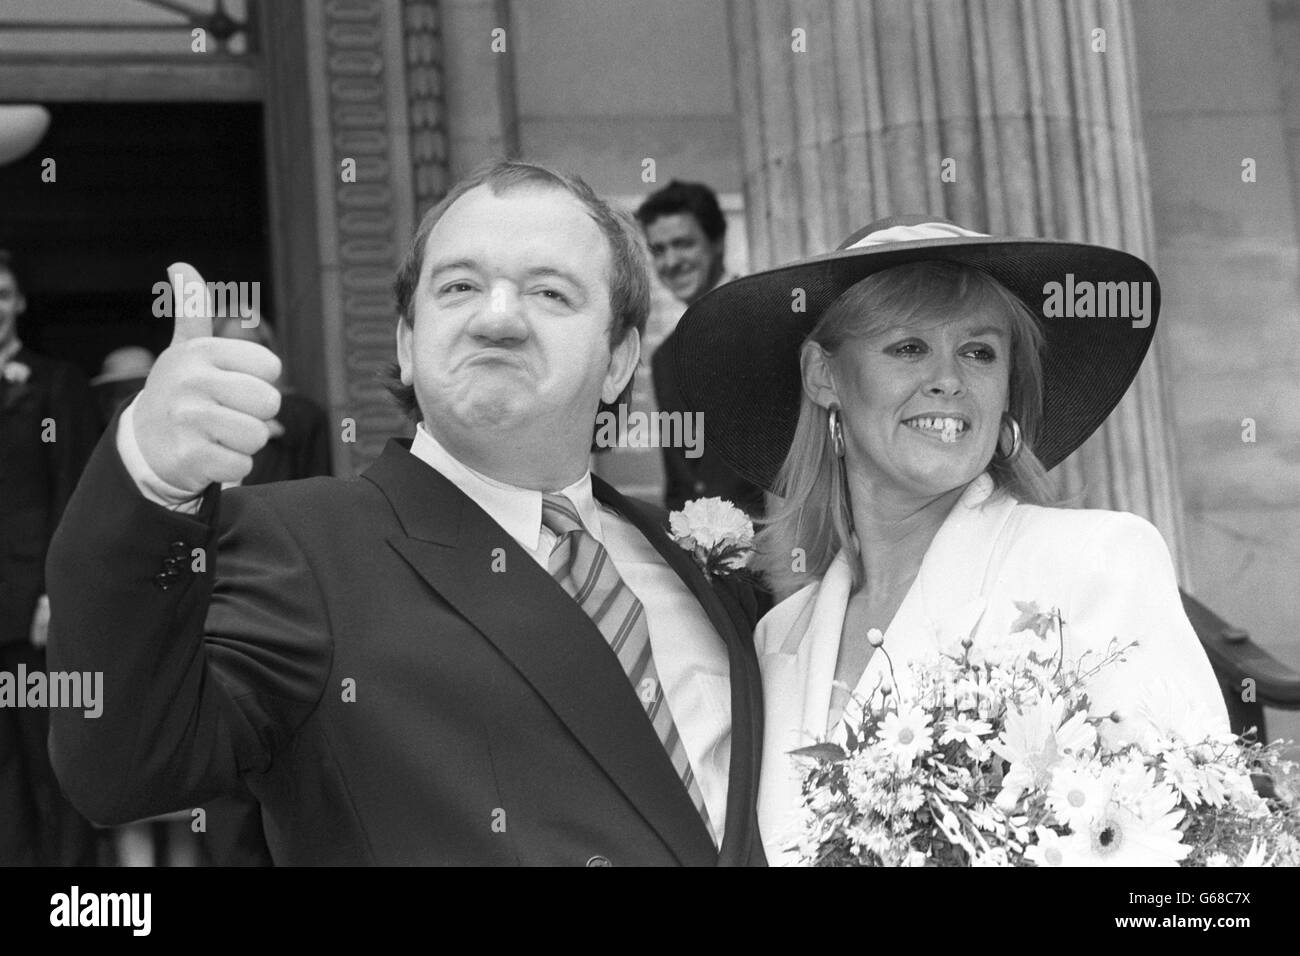 Il comico Mel Smith con la sposa Pamela Gay-Rees fuori dall'ufficio del registro di Westminster a Londra. Il comico partner di Smith, Griff Rhys Jones, può essere visto sullo sfondo. Foto Stock